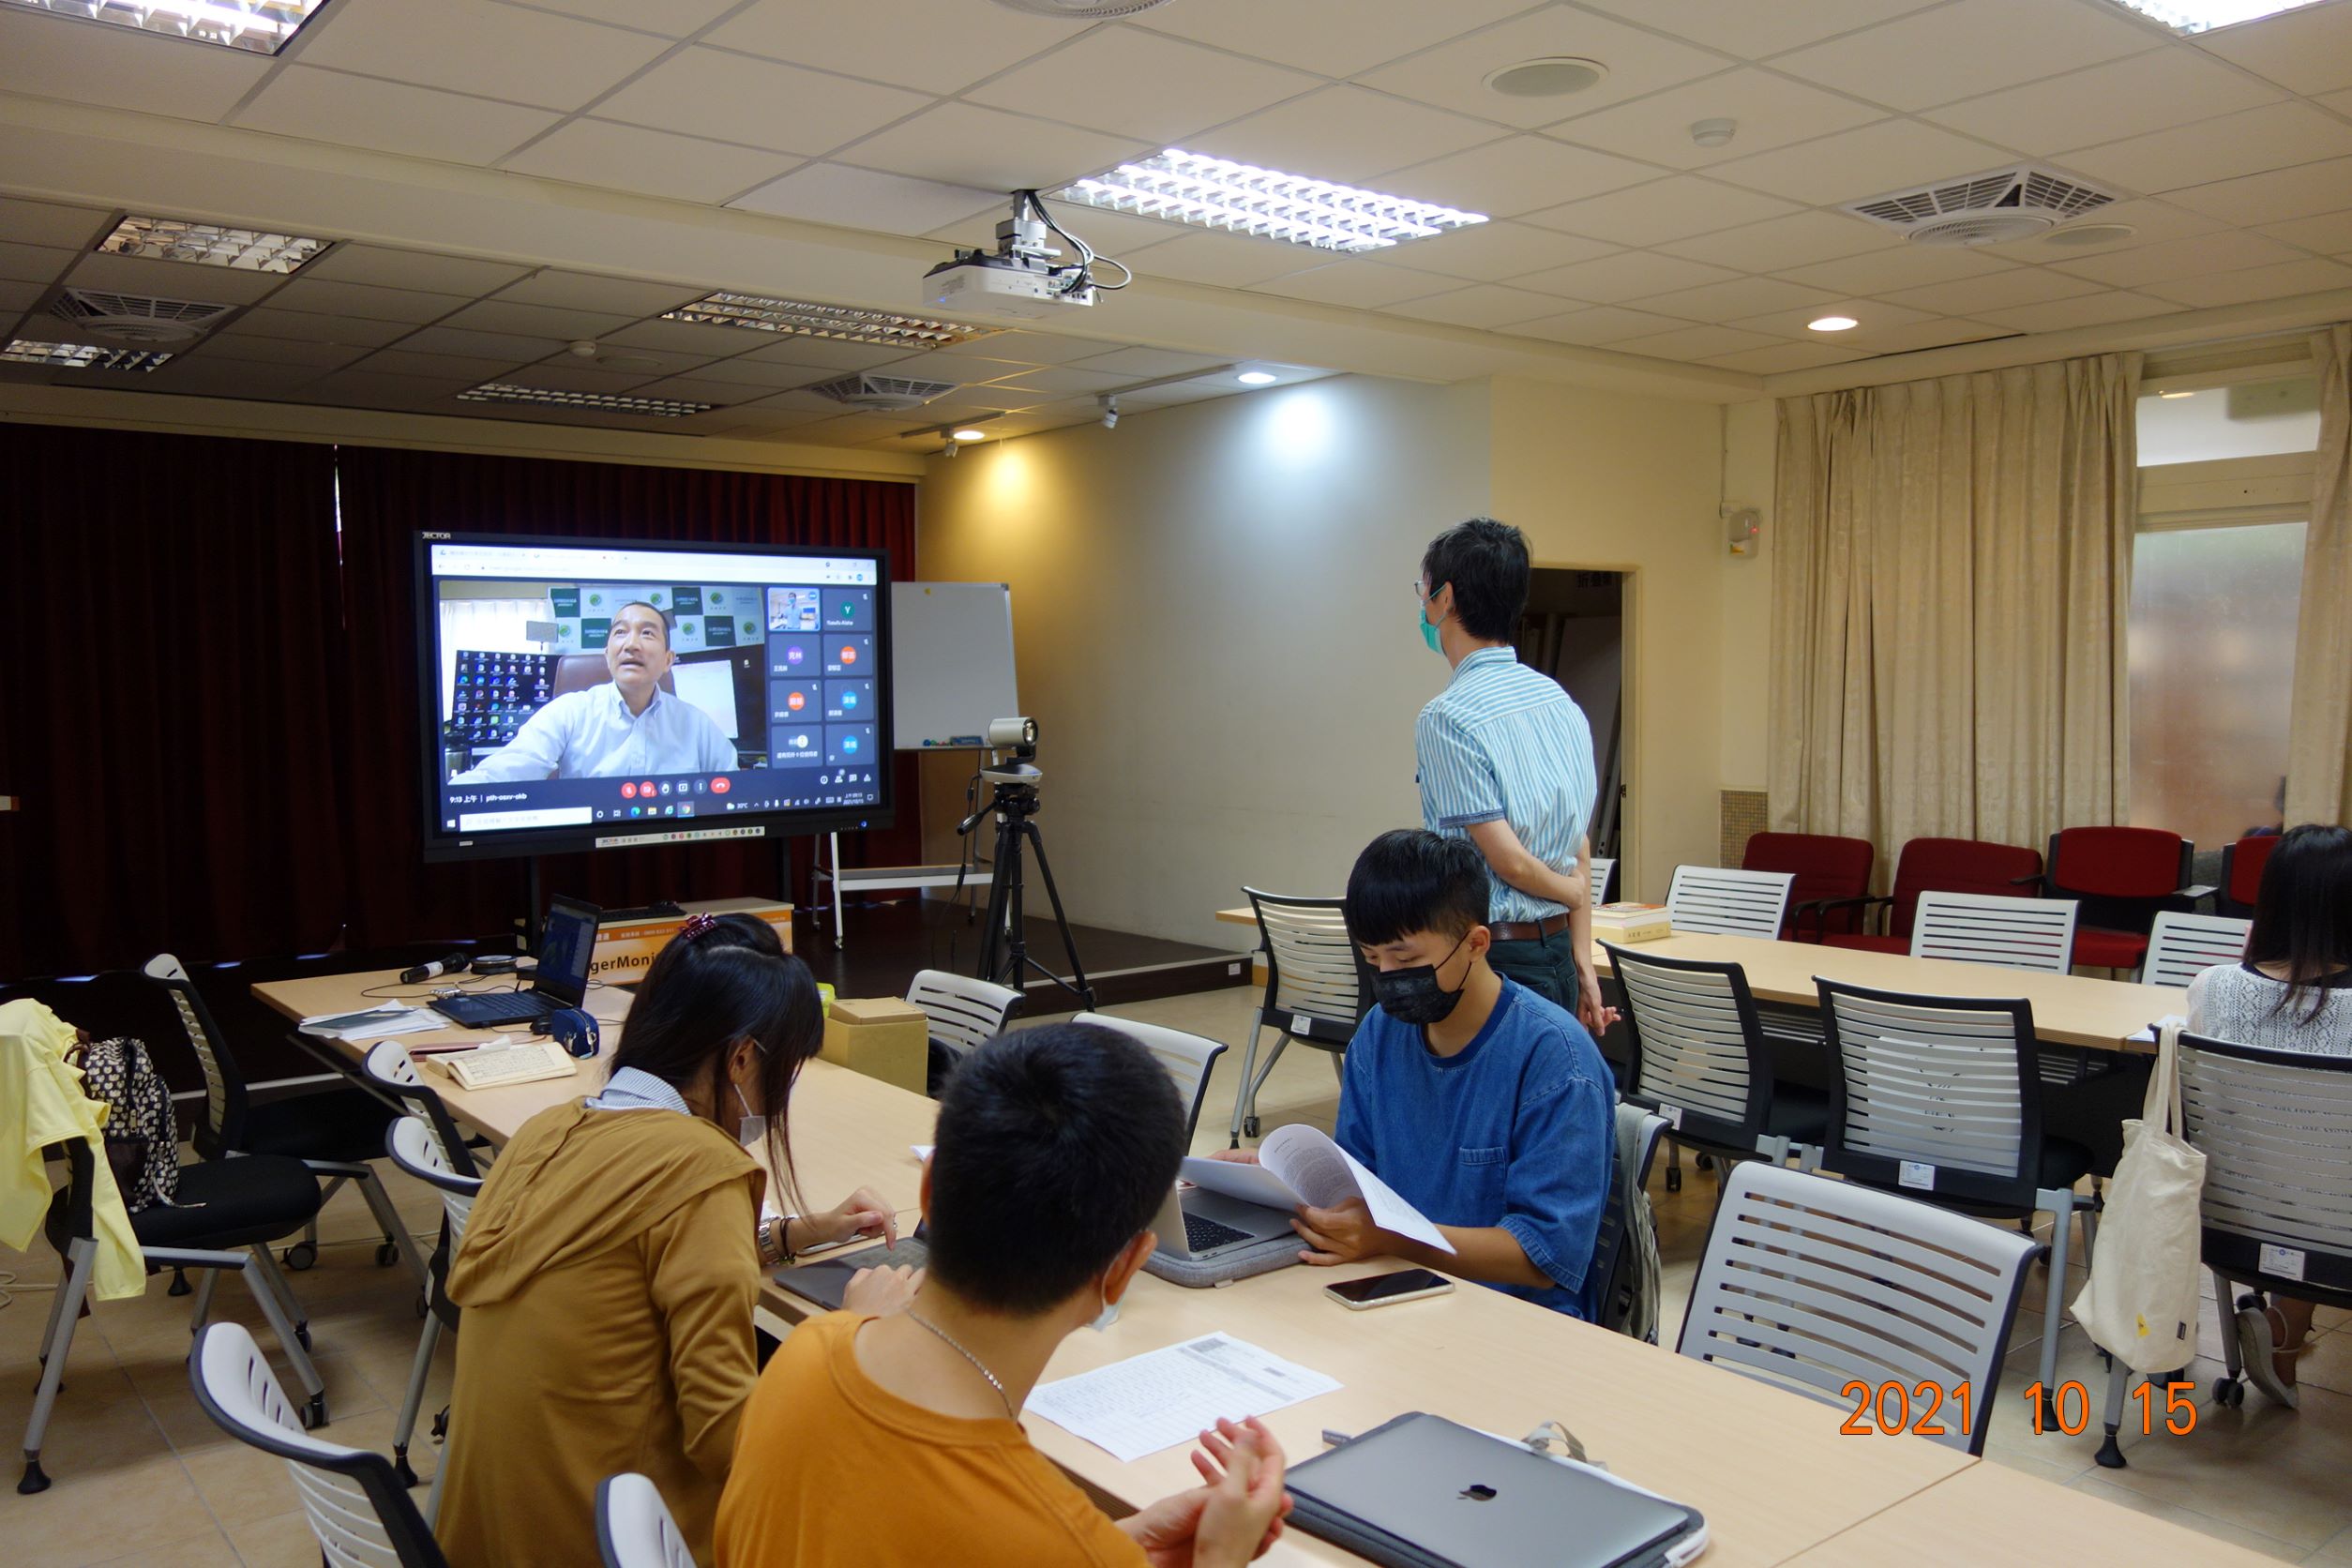 課程的第二部份，邀請到廣島大學的荒見泰史教授為我們講授「日本佛教文學文獻」、「敦煌文學與日本說話文學」。